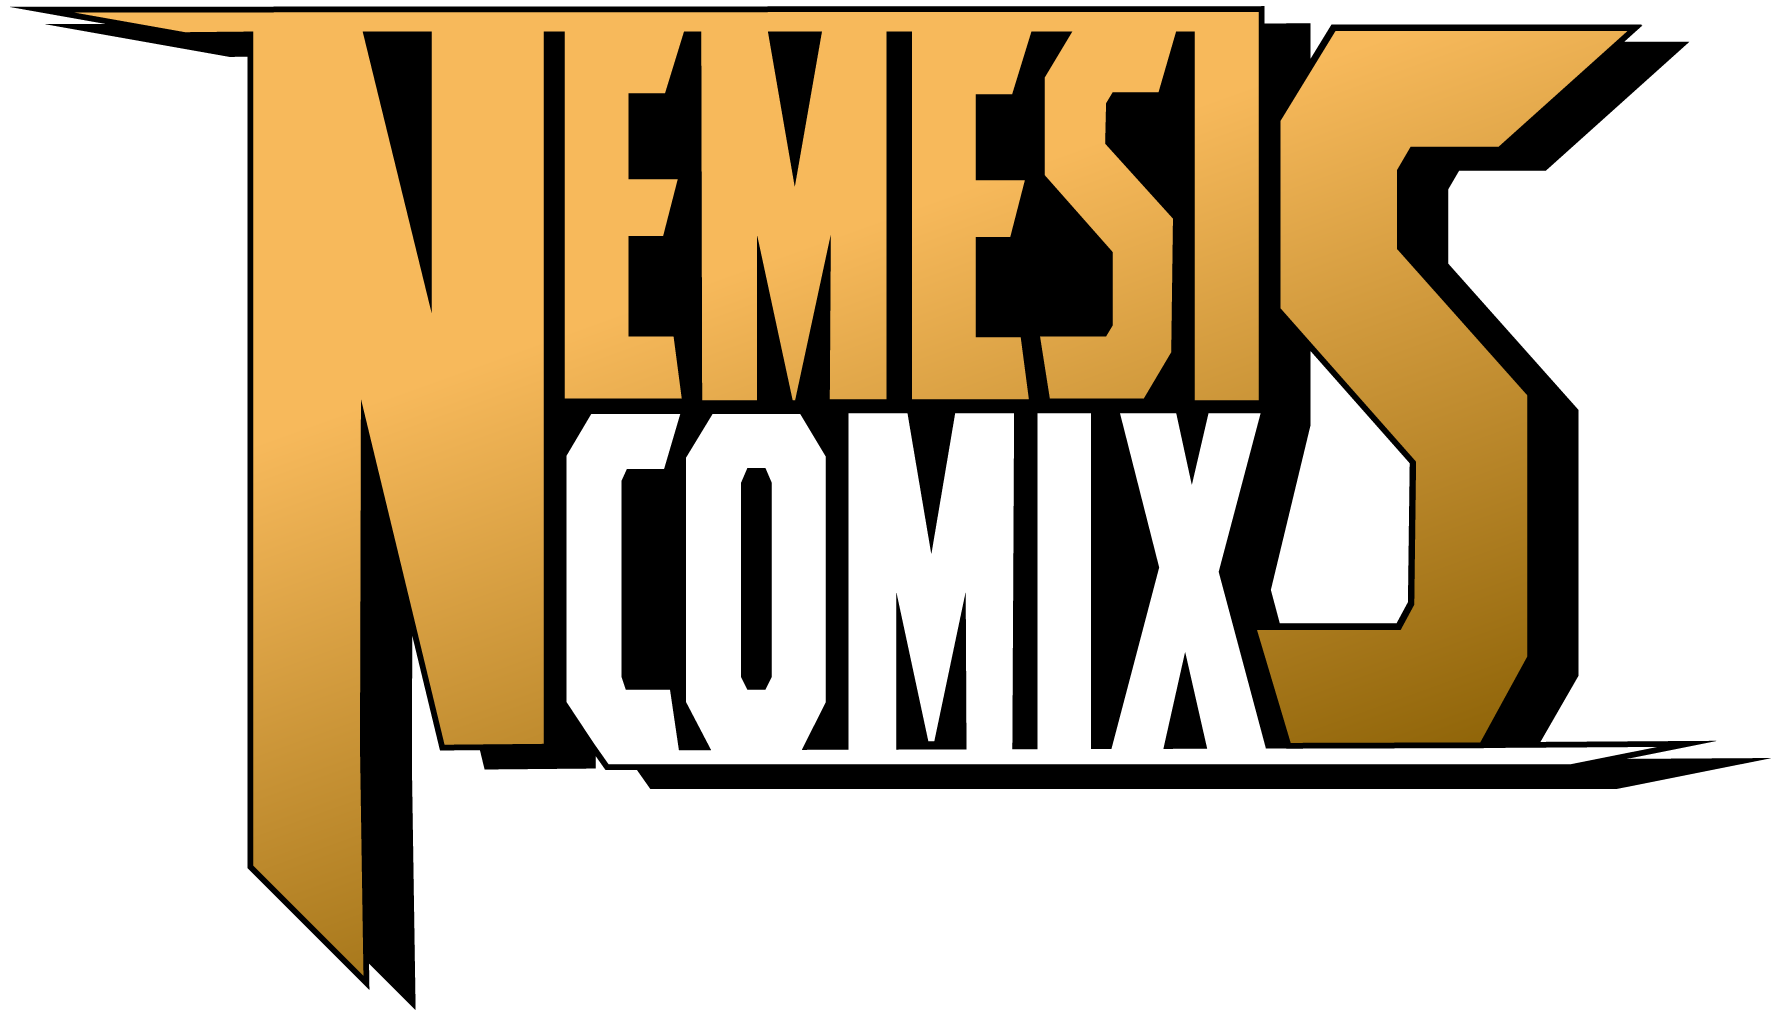 Nemesis Comix